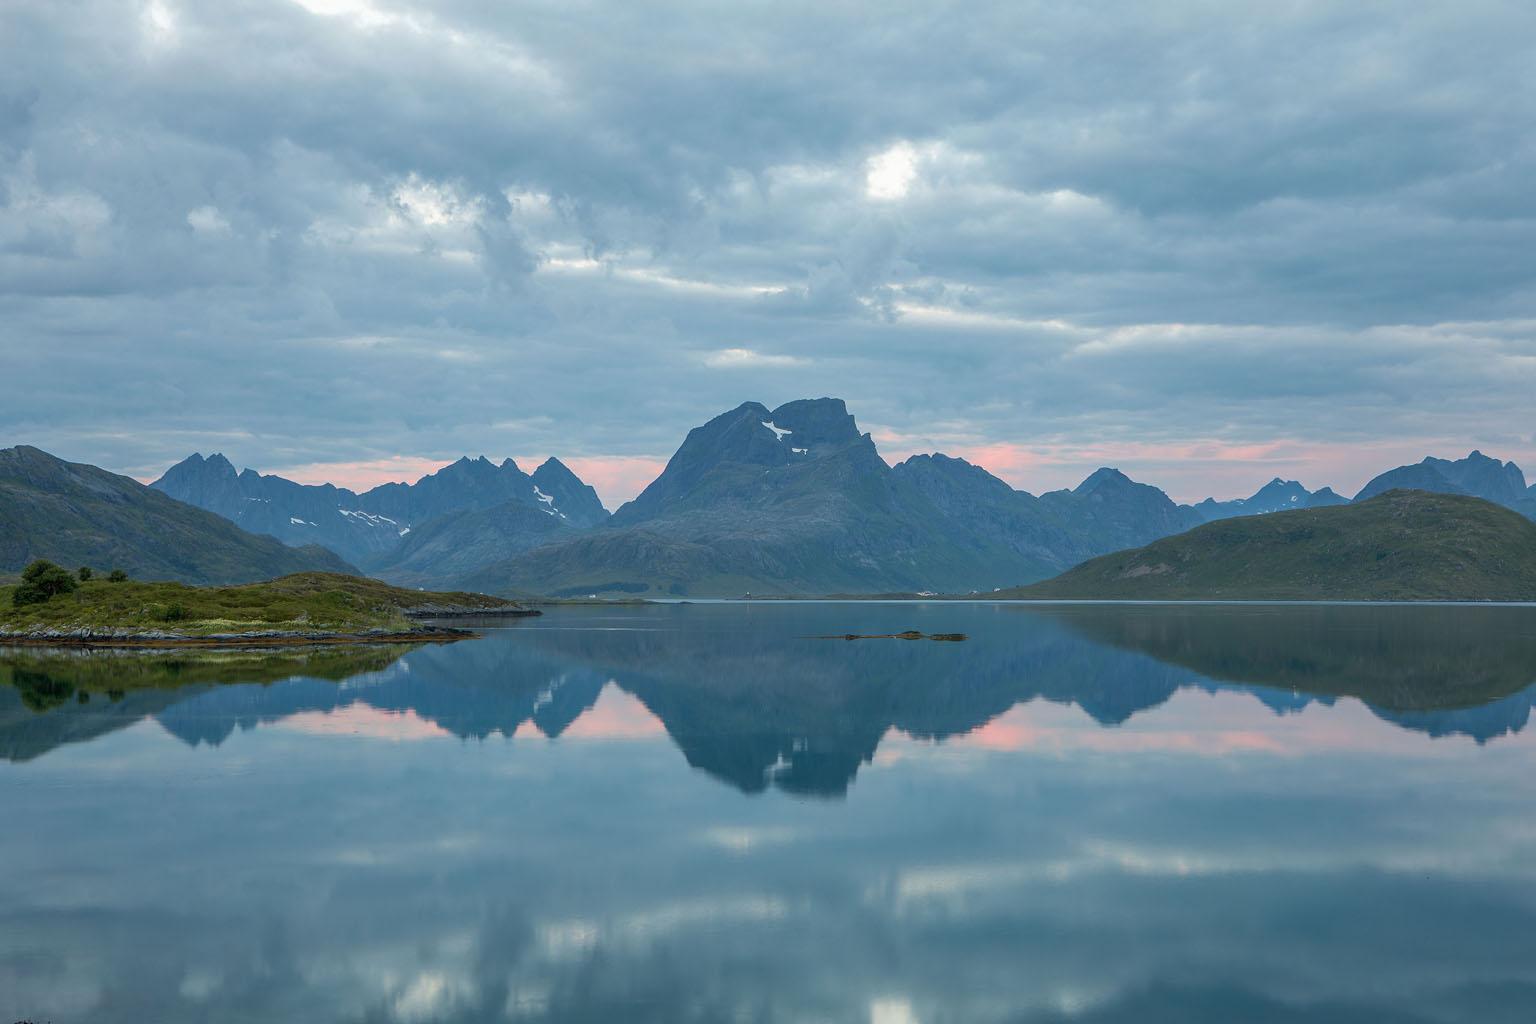 Allen Singer Landscape Photograph - "Lofoten Islands, Norway", Color Nature Photography, Seascape, Landscape